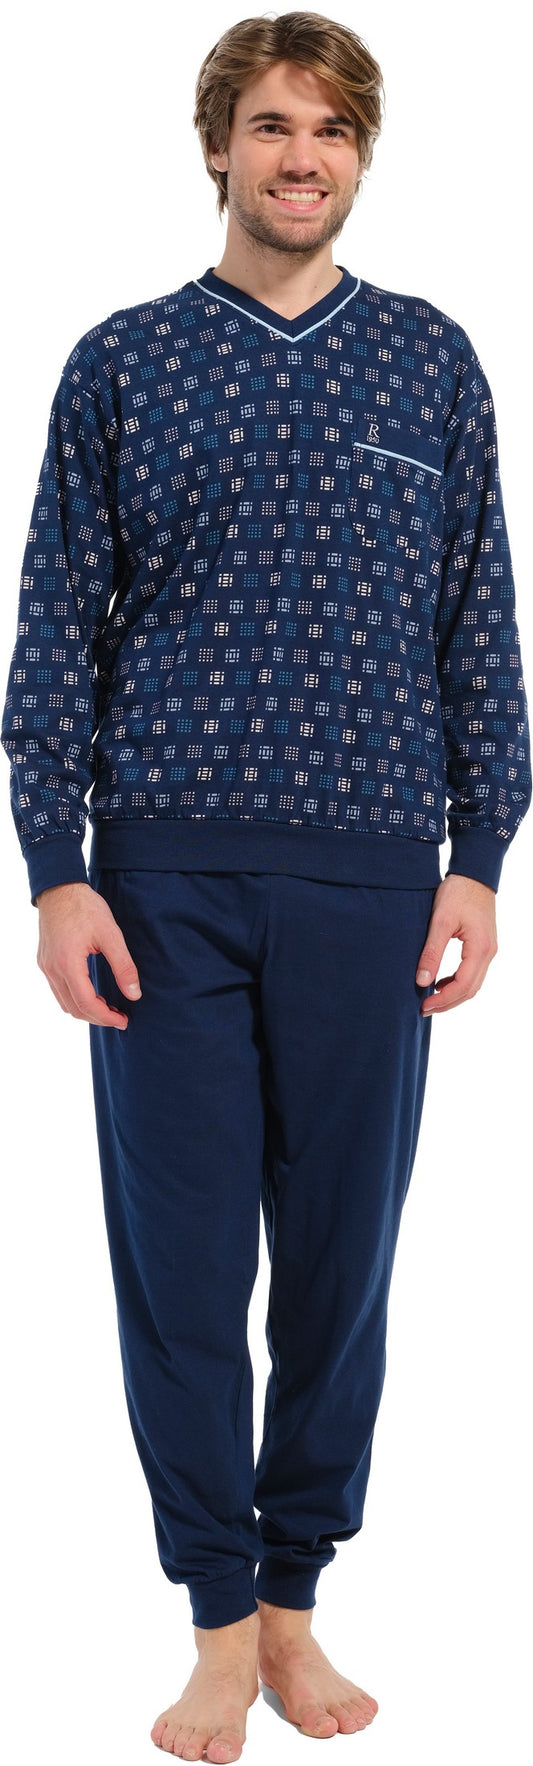 Pyjama 27232-716-2 526 blauw